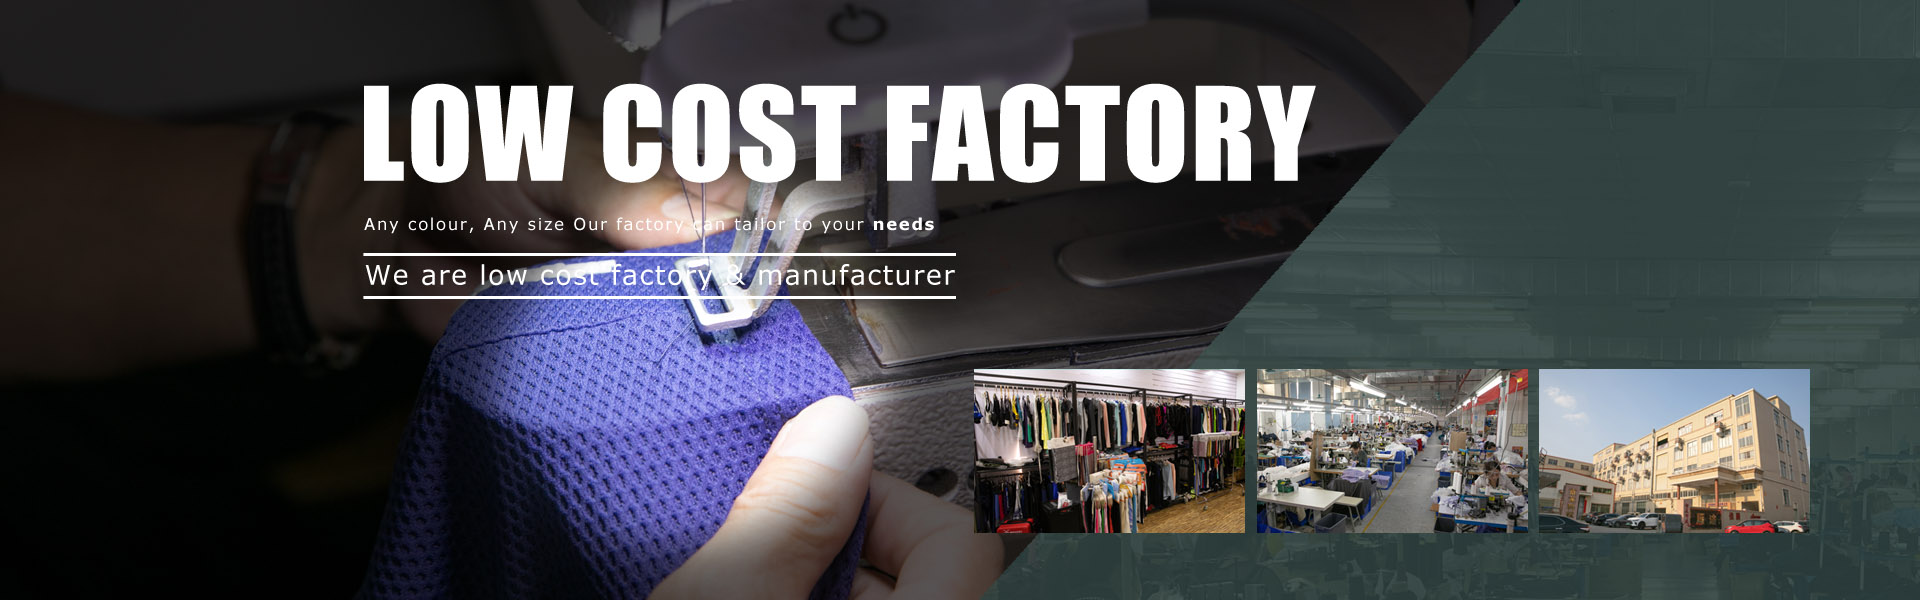 Yaga kledingfabriek